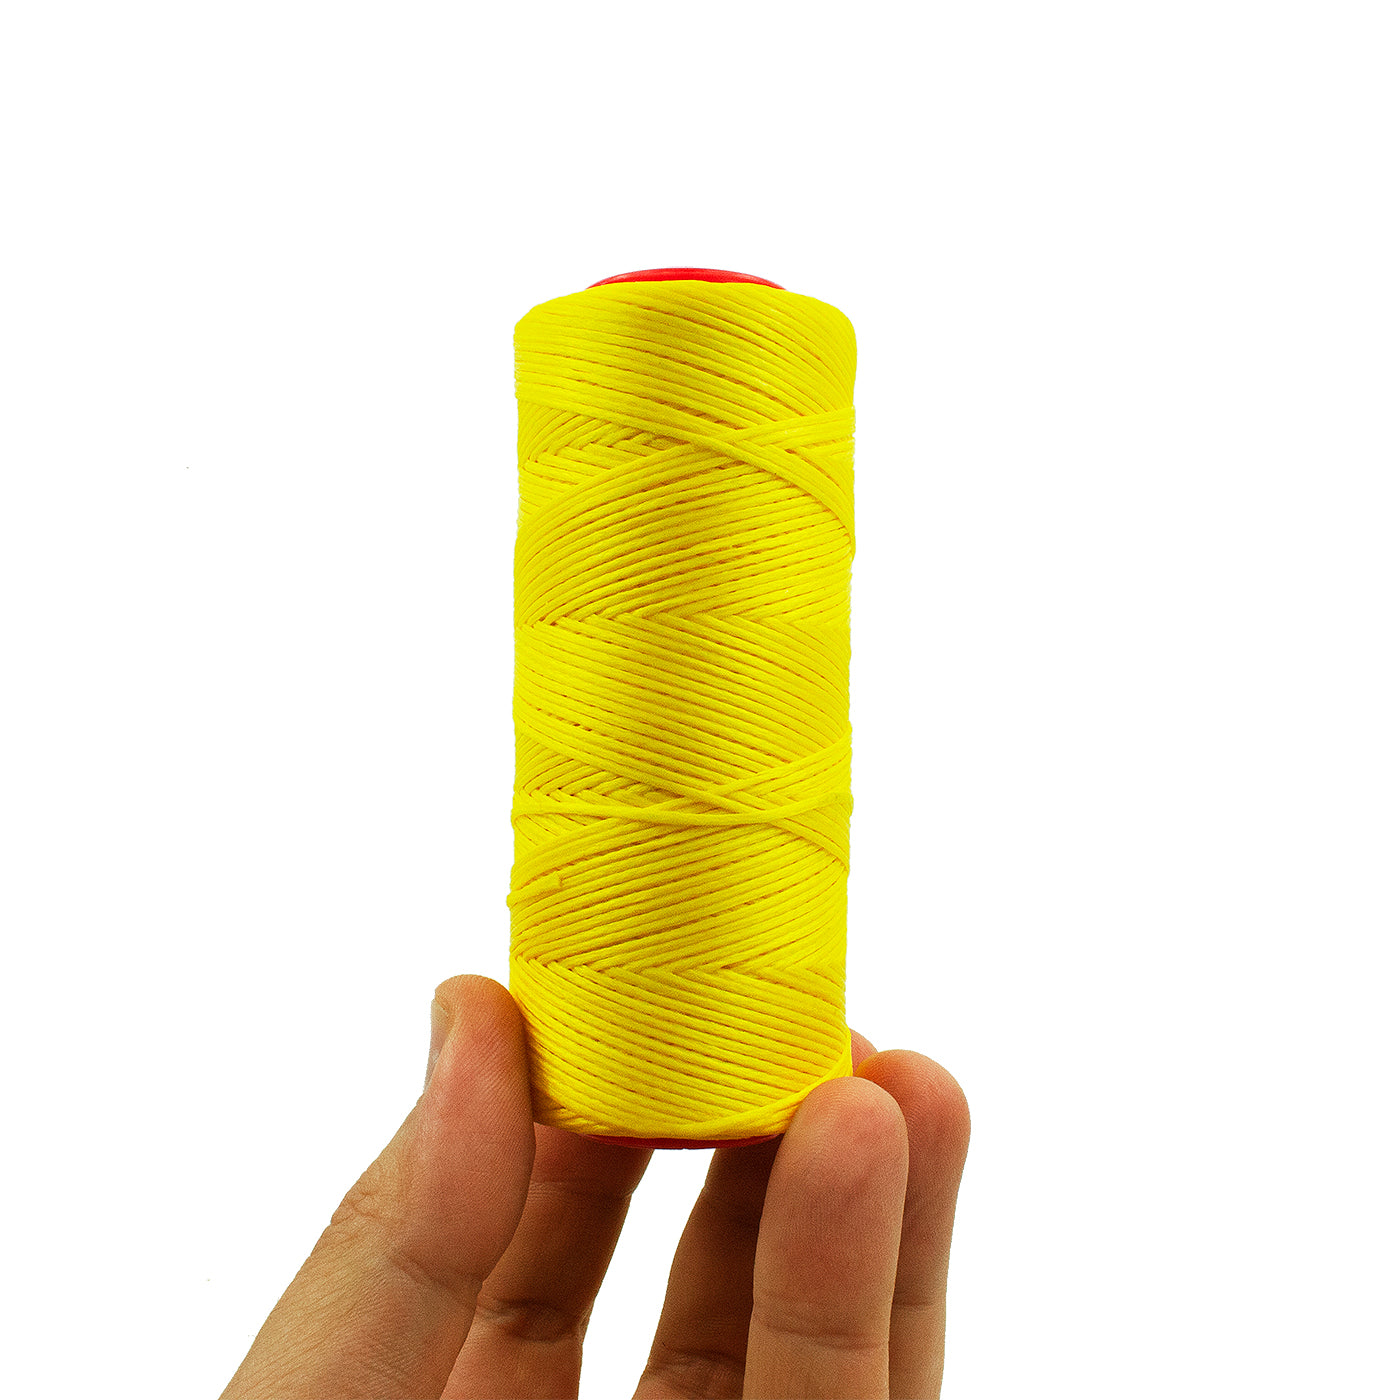 Flat waxed thread 1.0 mm per meter